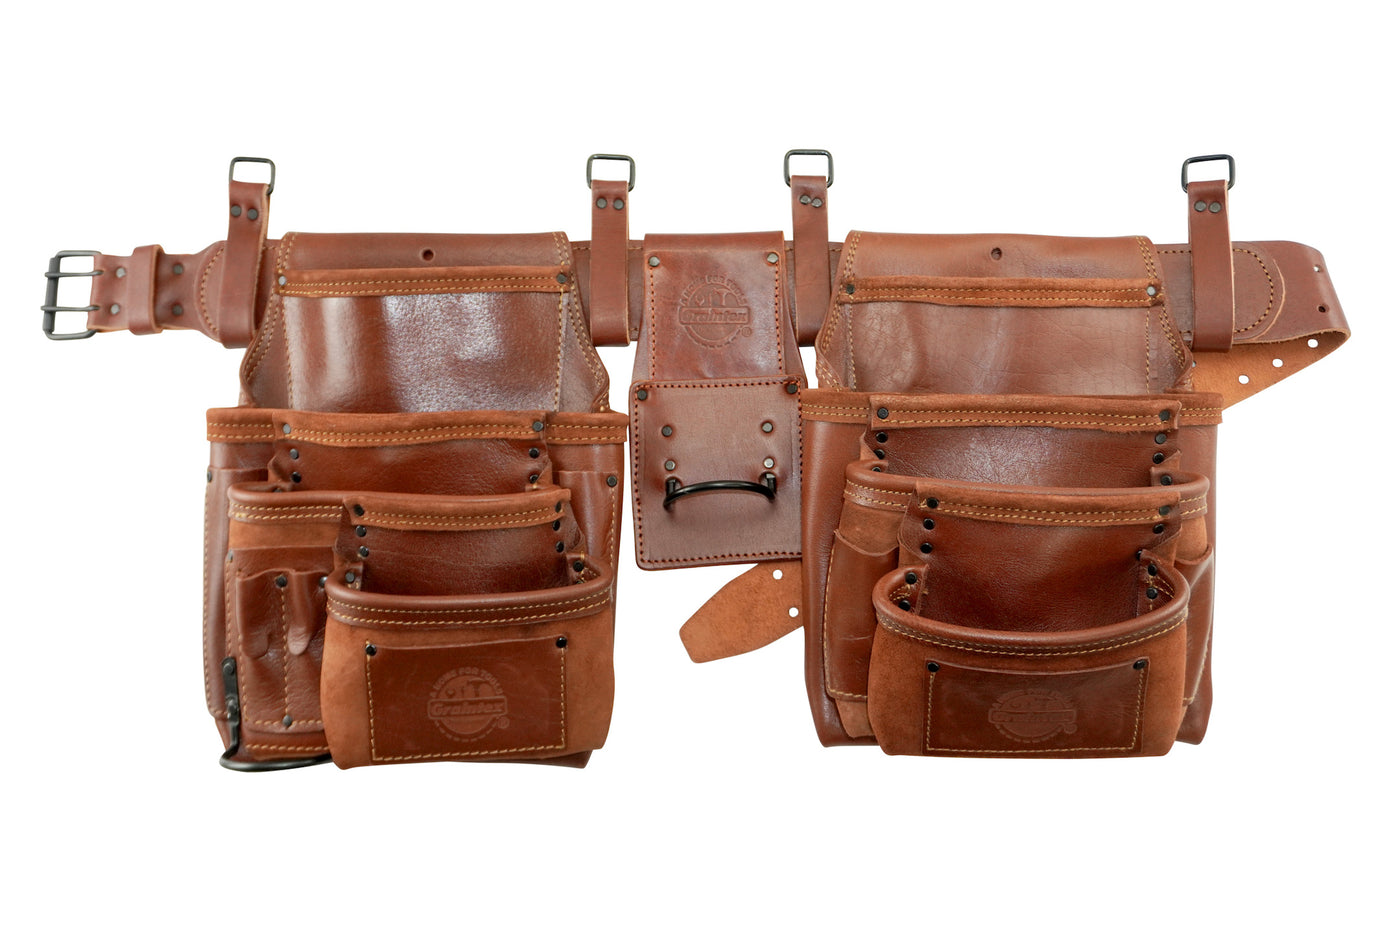 AD2762 :: 4 Piece 17 Pocket Framer's Tool Belt Combo Ambassador Series Chestnut Brown Color Grain Leather